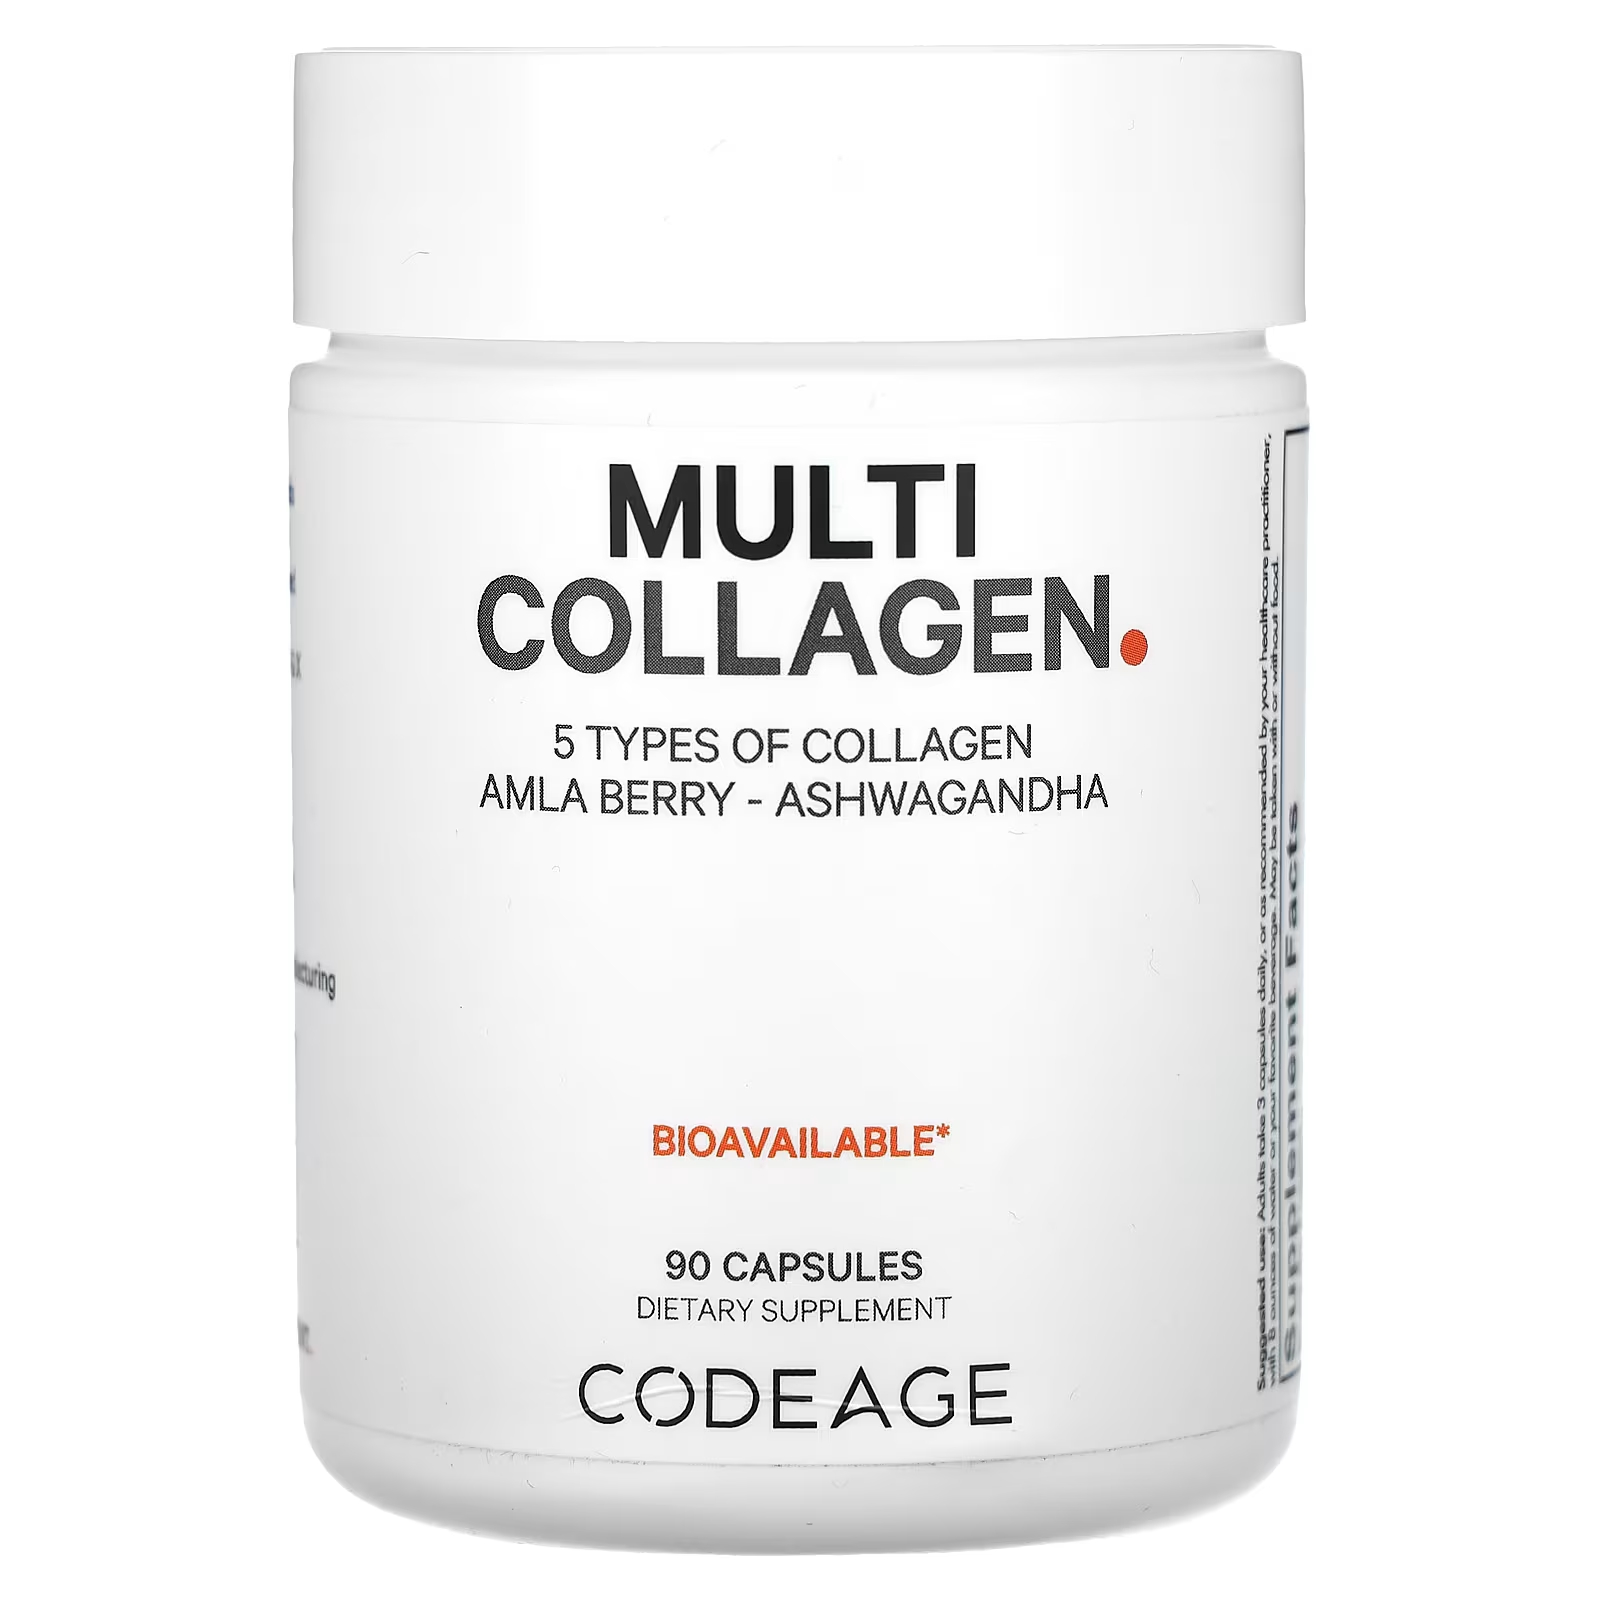 Пищевая добавка Codeage Мульти Коллаген без молочных продуктов, 90 капсул codeage гидролизованный мультиколлагеновый протеин смесь для суставов 90 капсул